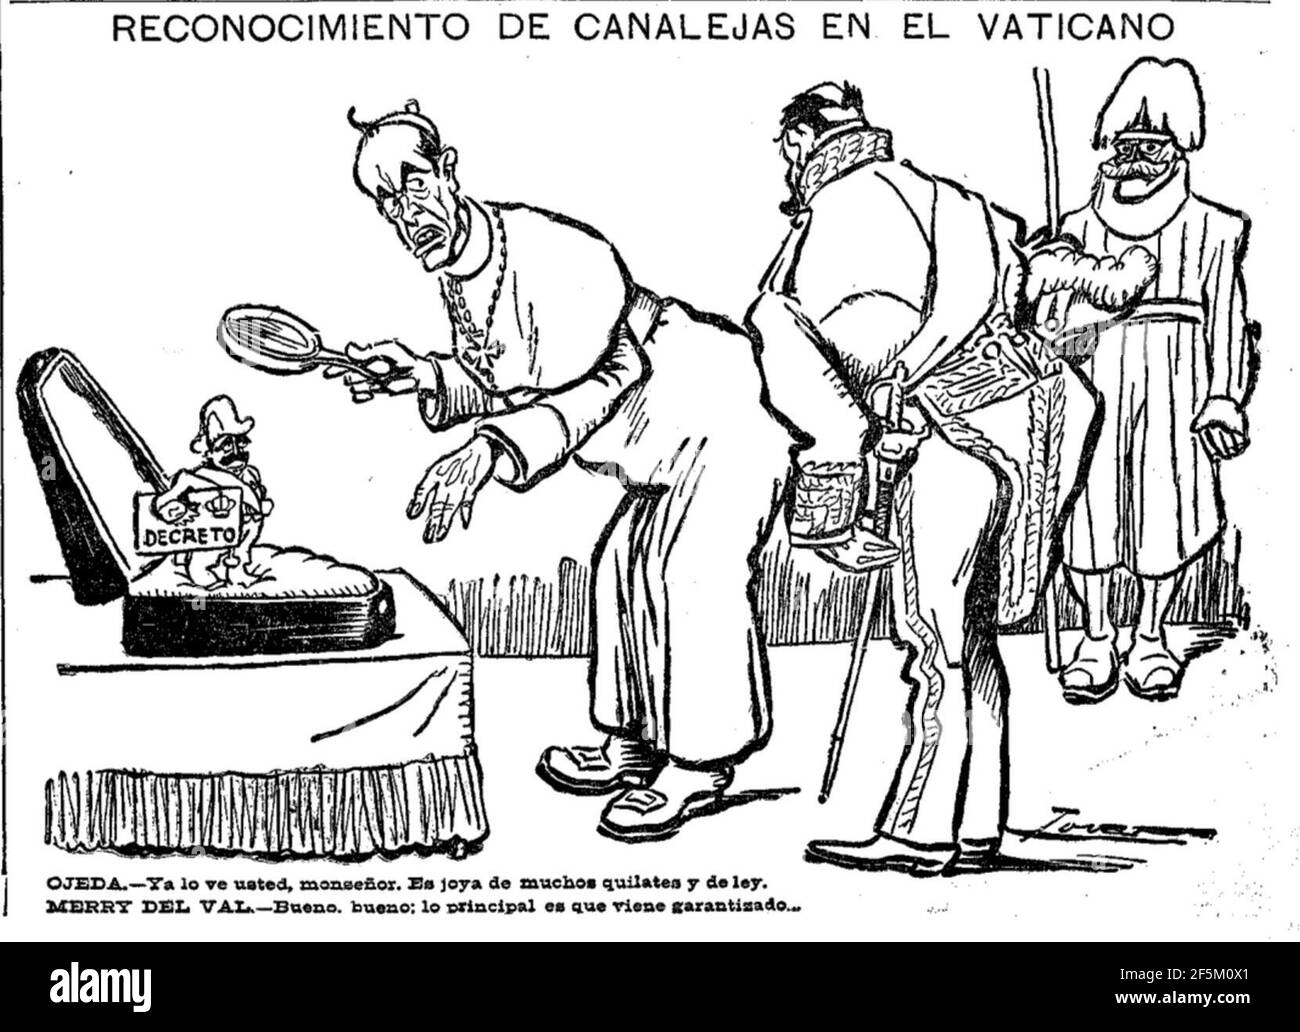 Reconocimiento de Canalejas en El Vaticano, de Tovar, El Liberal, 20 de abril de 1910. Stock Photo